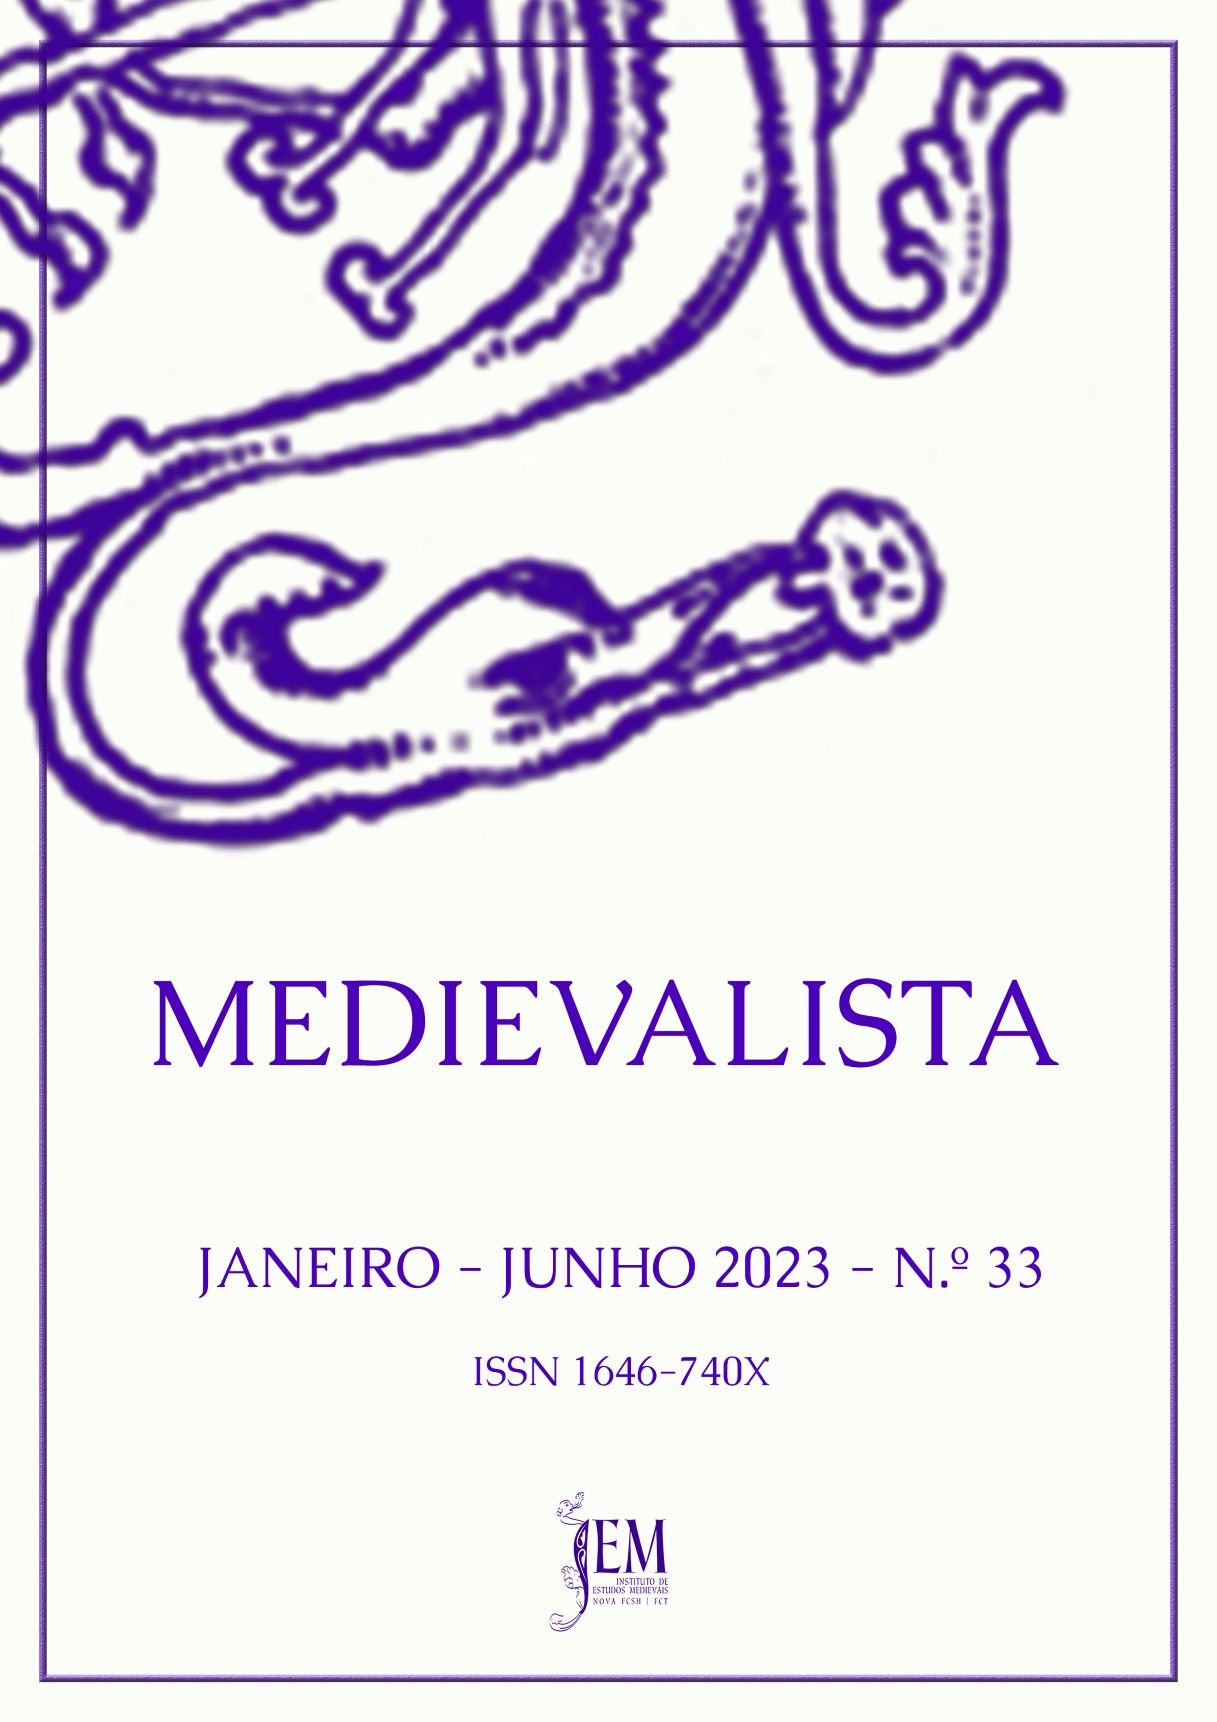 					Ver N.º 33 (2023): Medievalista - Dossier “O Castelo de Belvoir e a arquitectura fortificada da Ordem militar de São João”
				